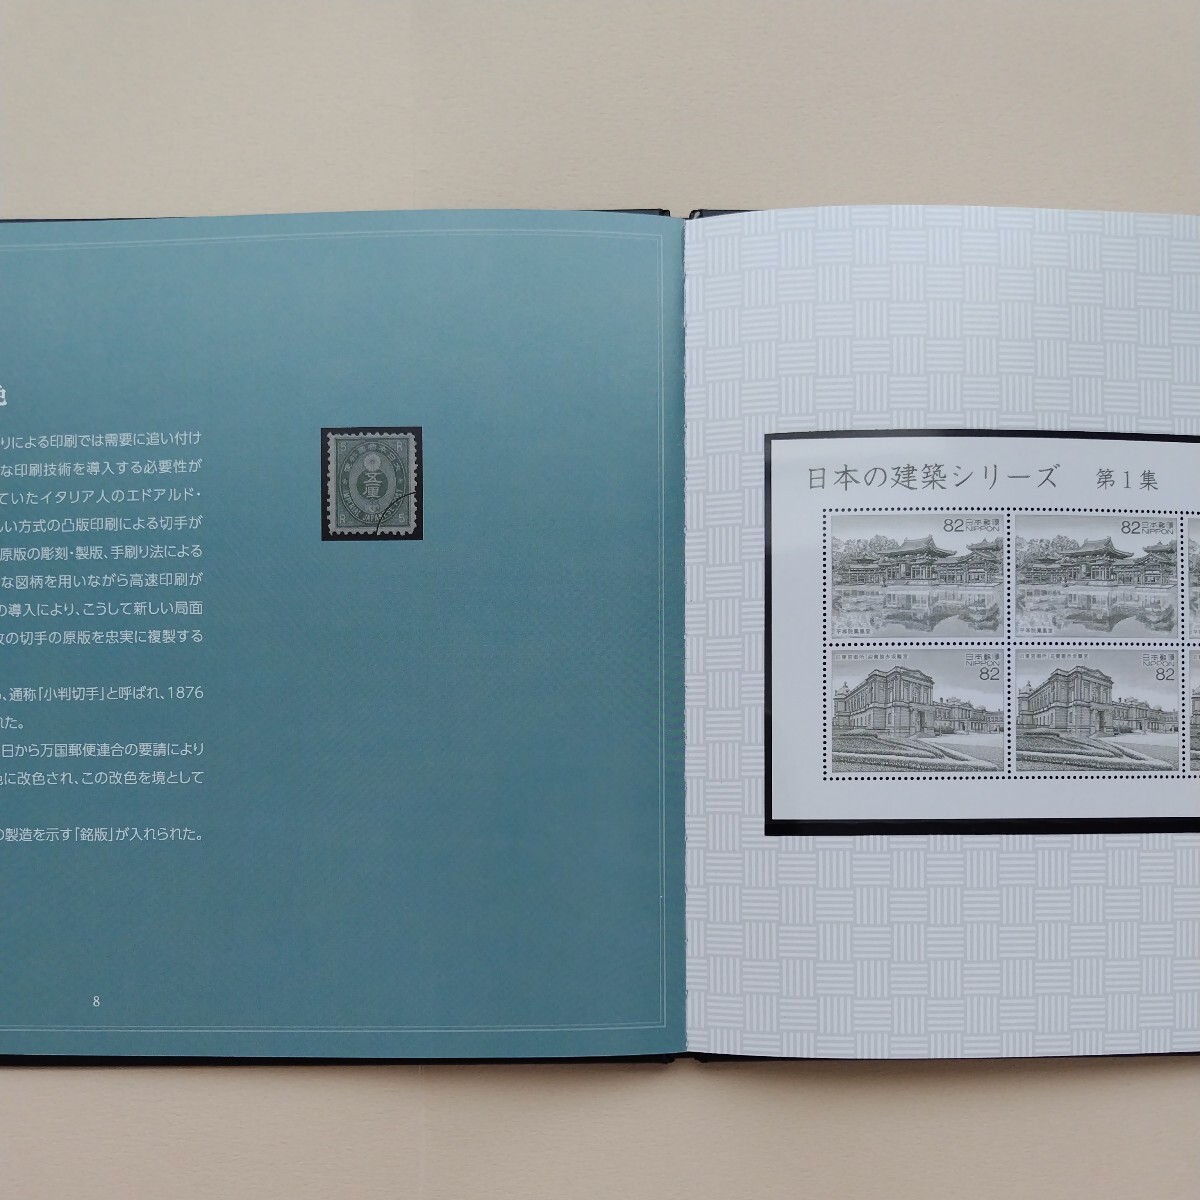 2016(平成28)年特殊切手、「日本の建築シリーズ第1集切手帳亅、82円2枚、82円10枚4シート、額面総額3,444円。リーフレット付き。_画像7